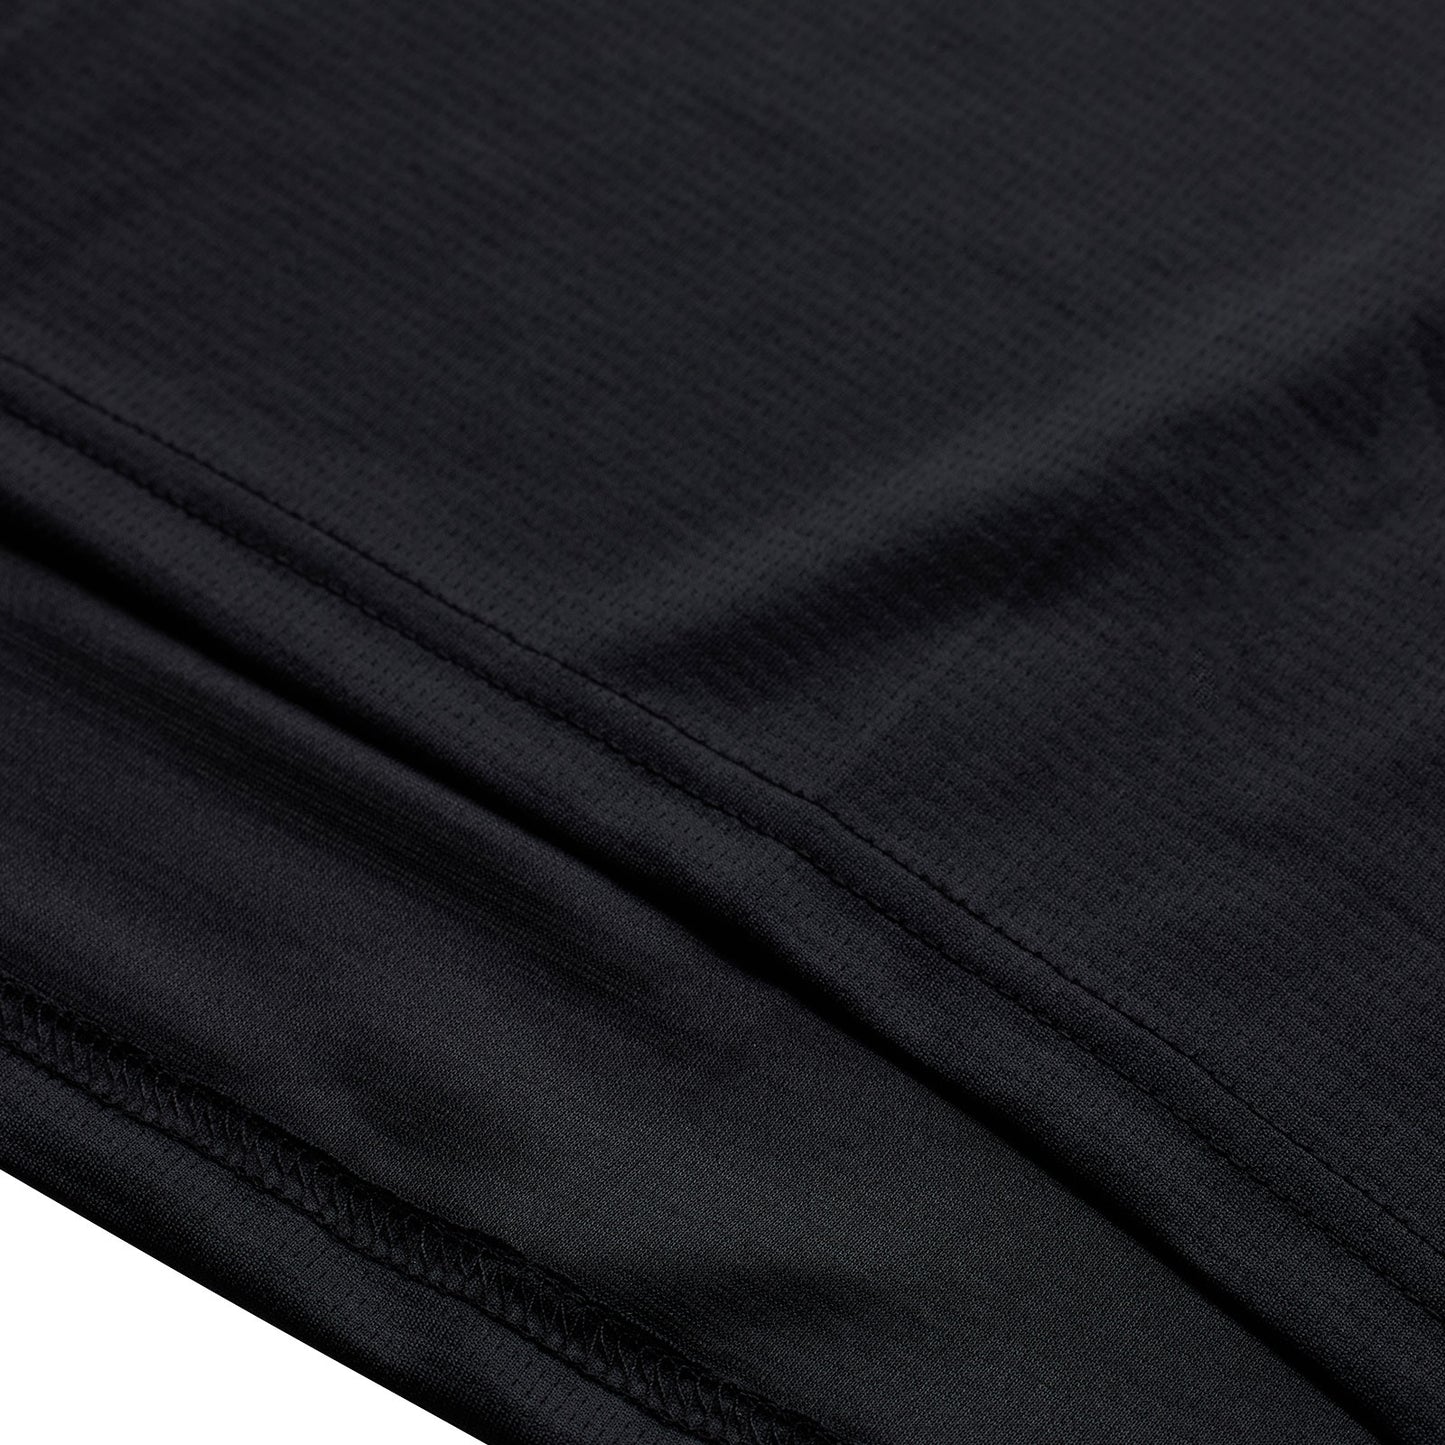 Ruckus 3/4 Sleeve Jersey, Solid Black | Troy Lee Designs®